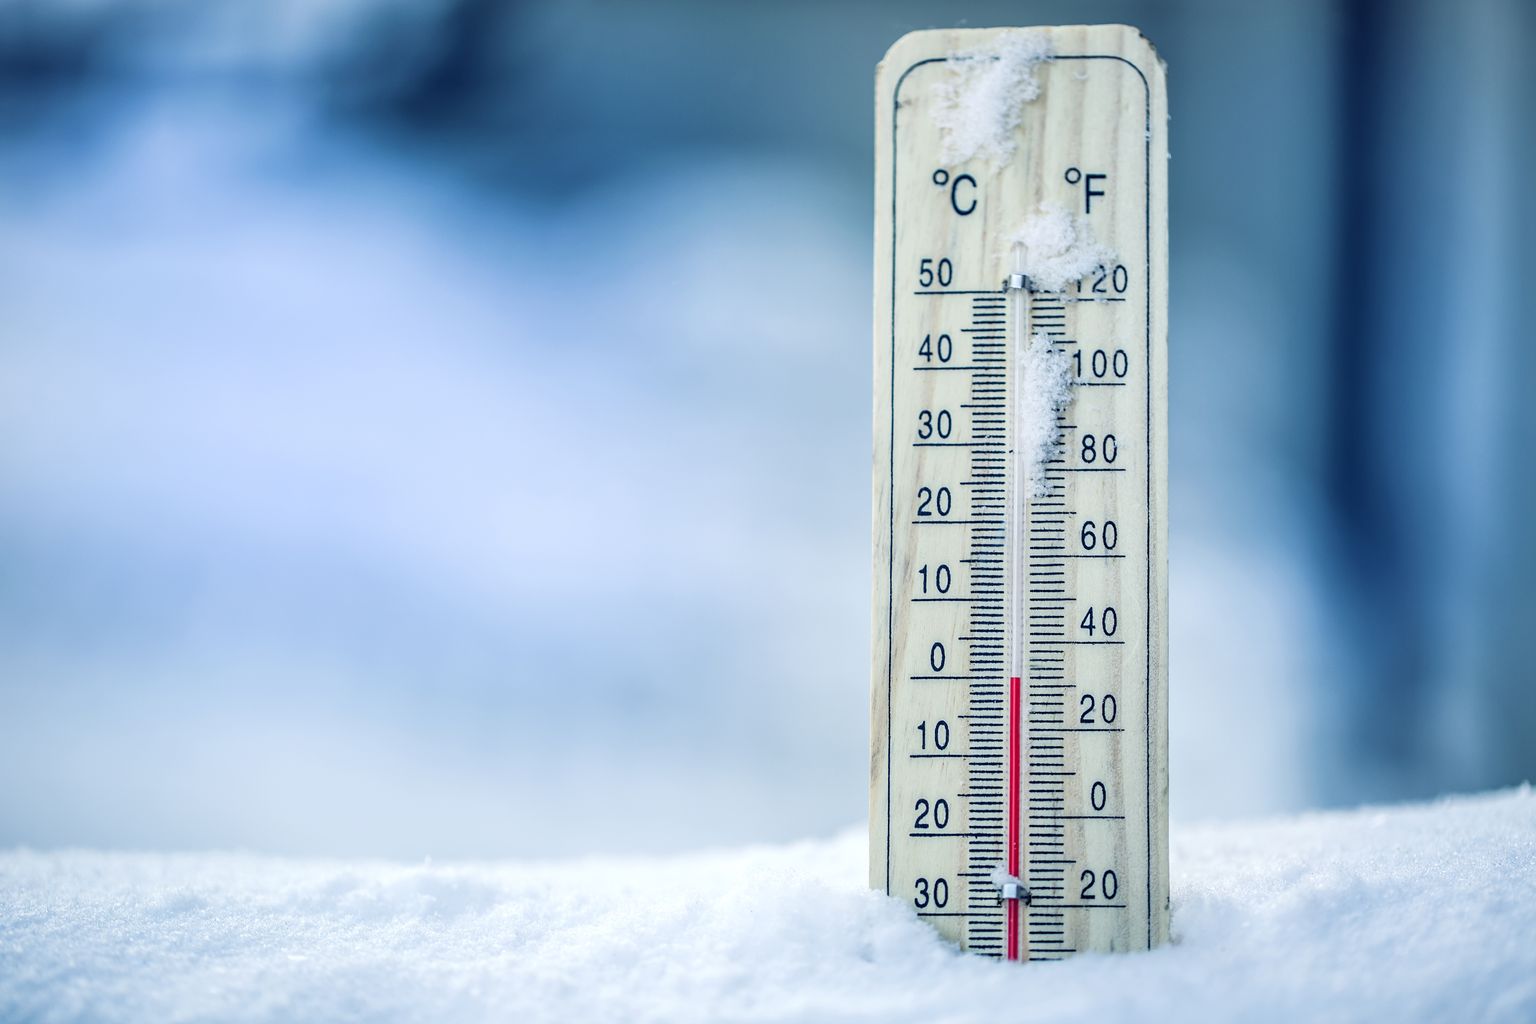 Das Thermometer auf Schnee zeigt niedrige Temperaturen in Celsius oder Farenheit.